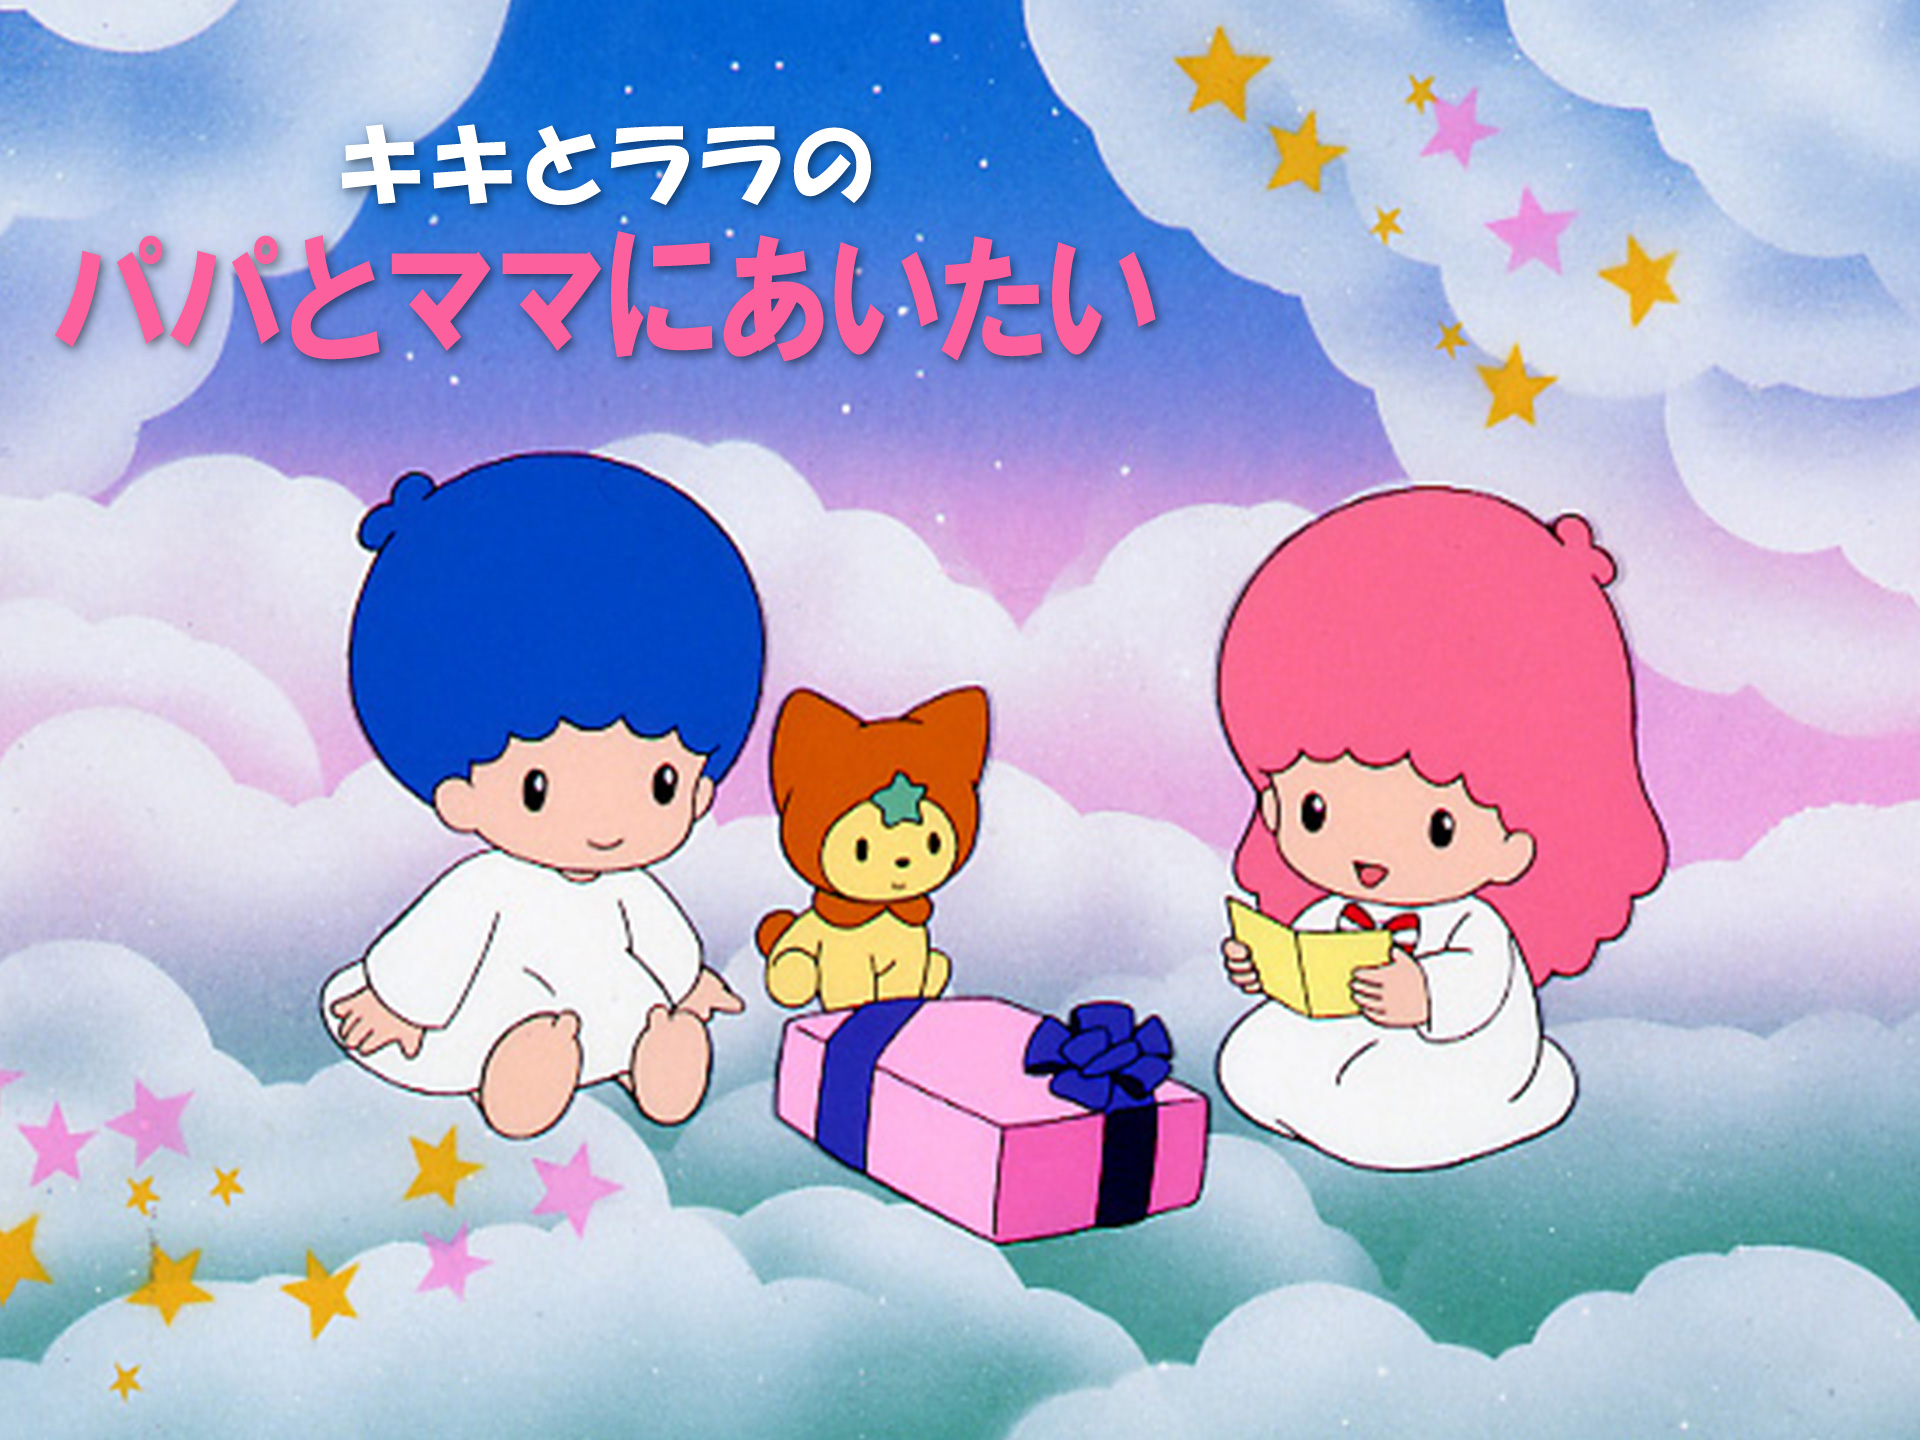 アニメ キキとララのパパとママにあいたい の動画 初月無料 動画配信サービスのビデオマーケット